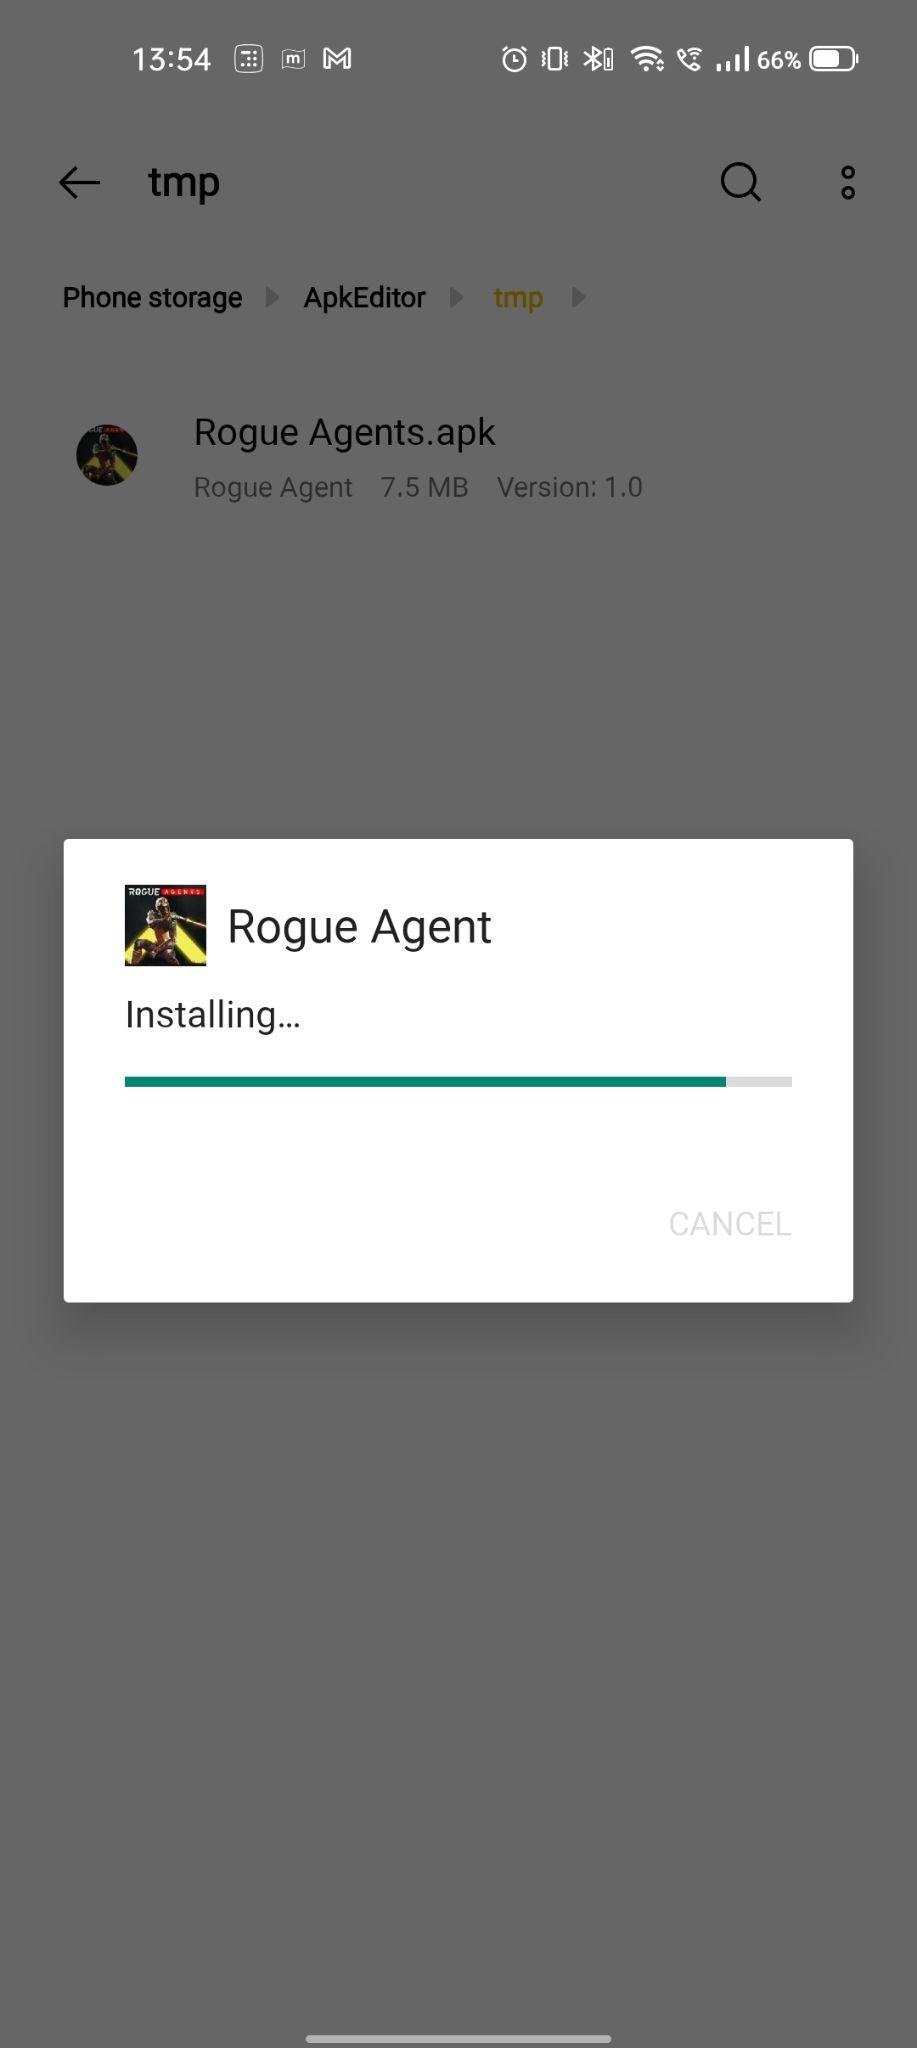 Rogue Agents apk installing